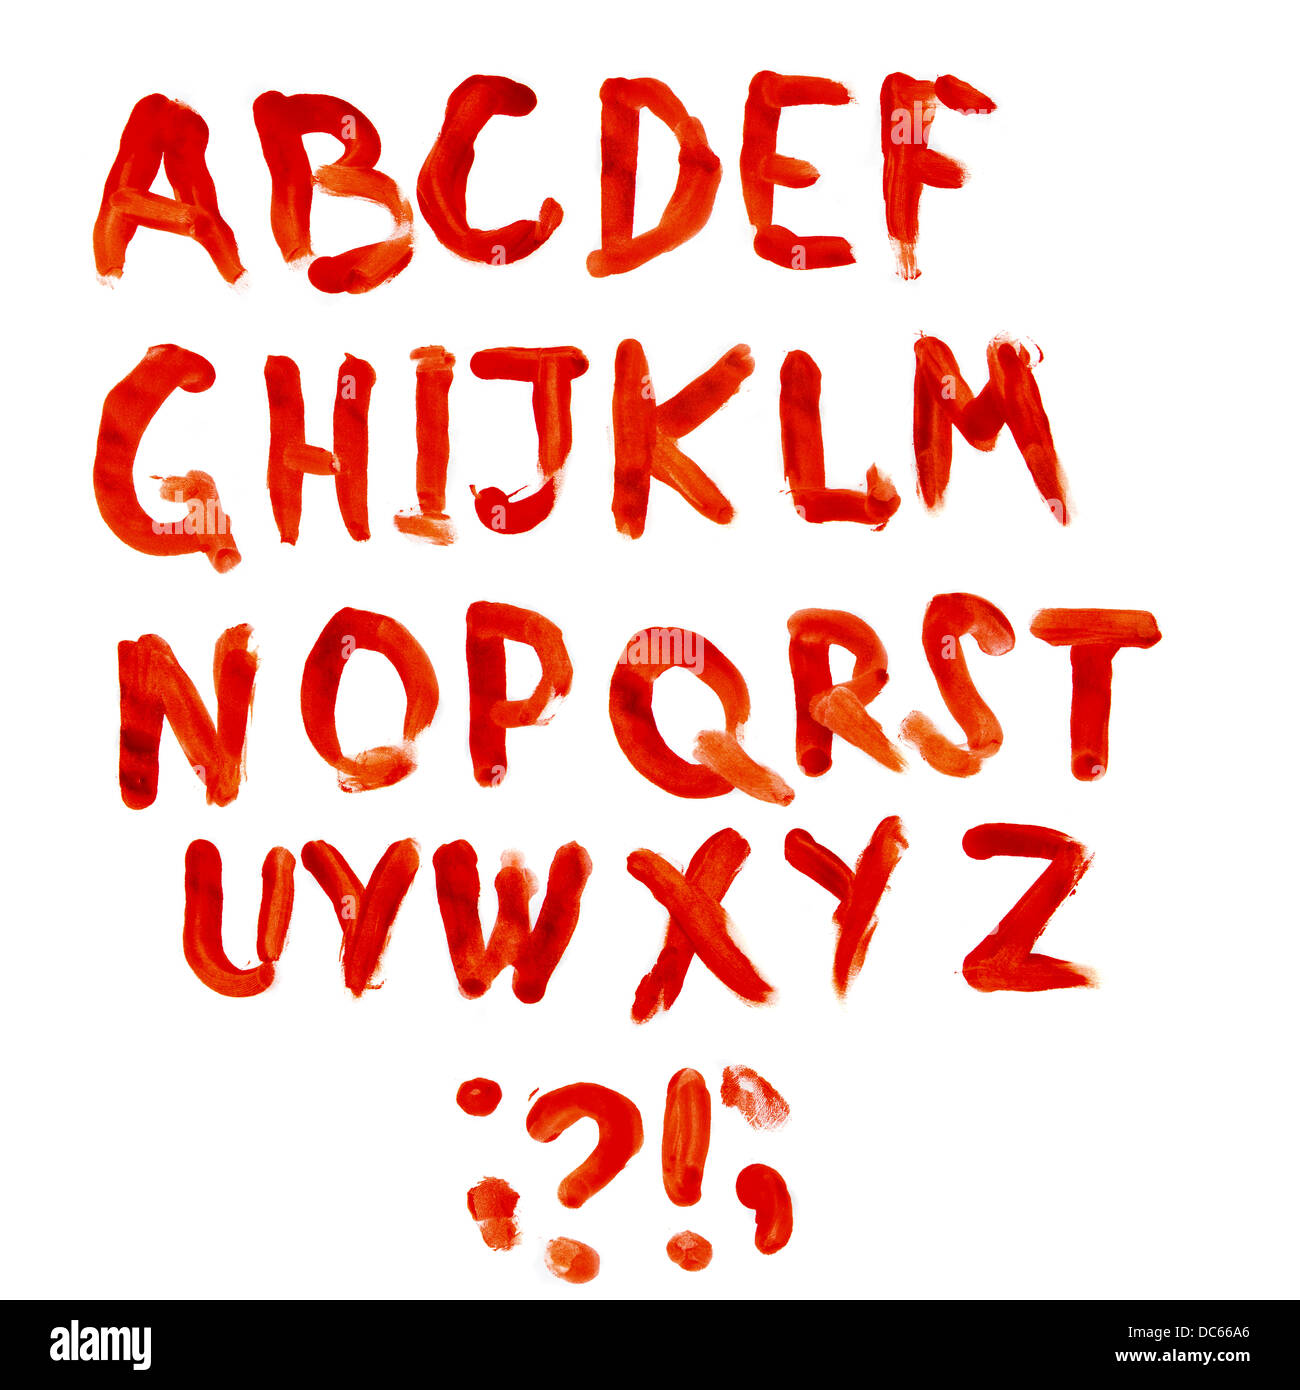 Bloodly alphabet full set isolated on white background Stock Photo